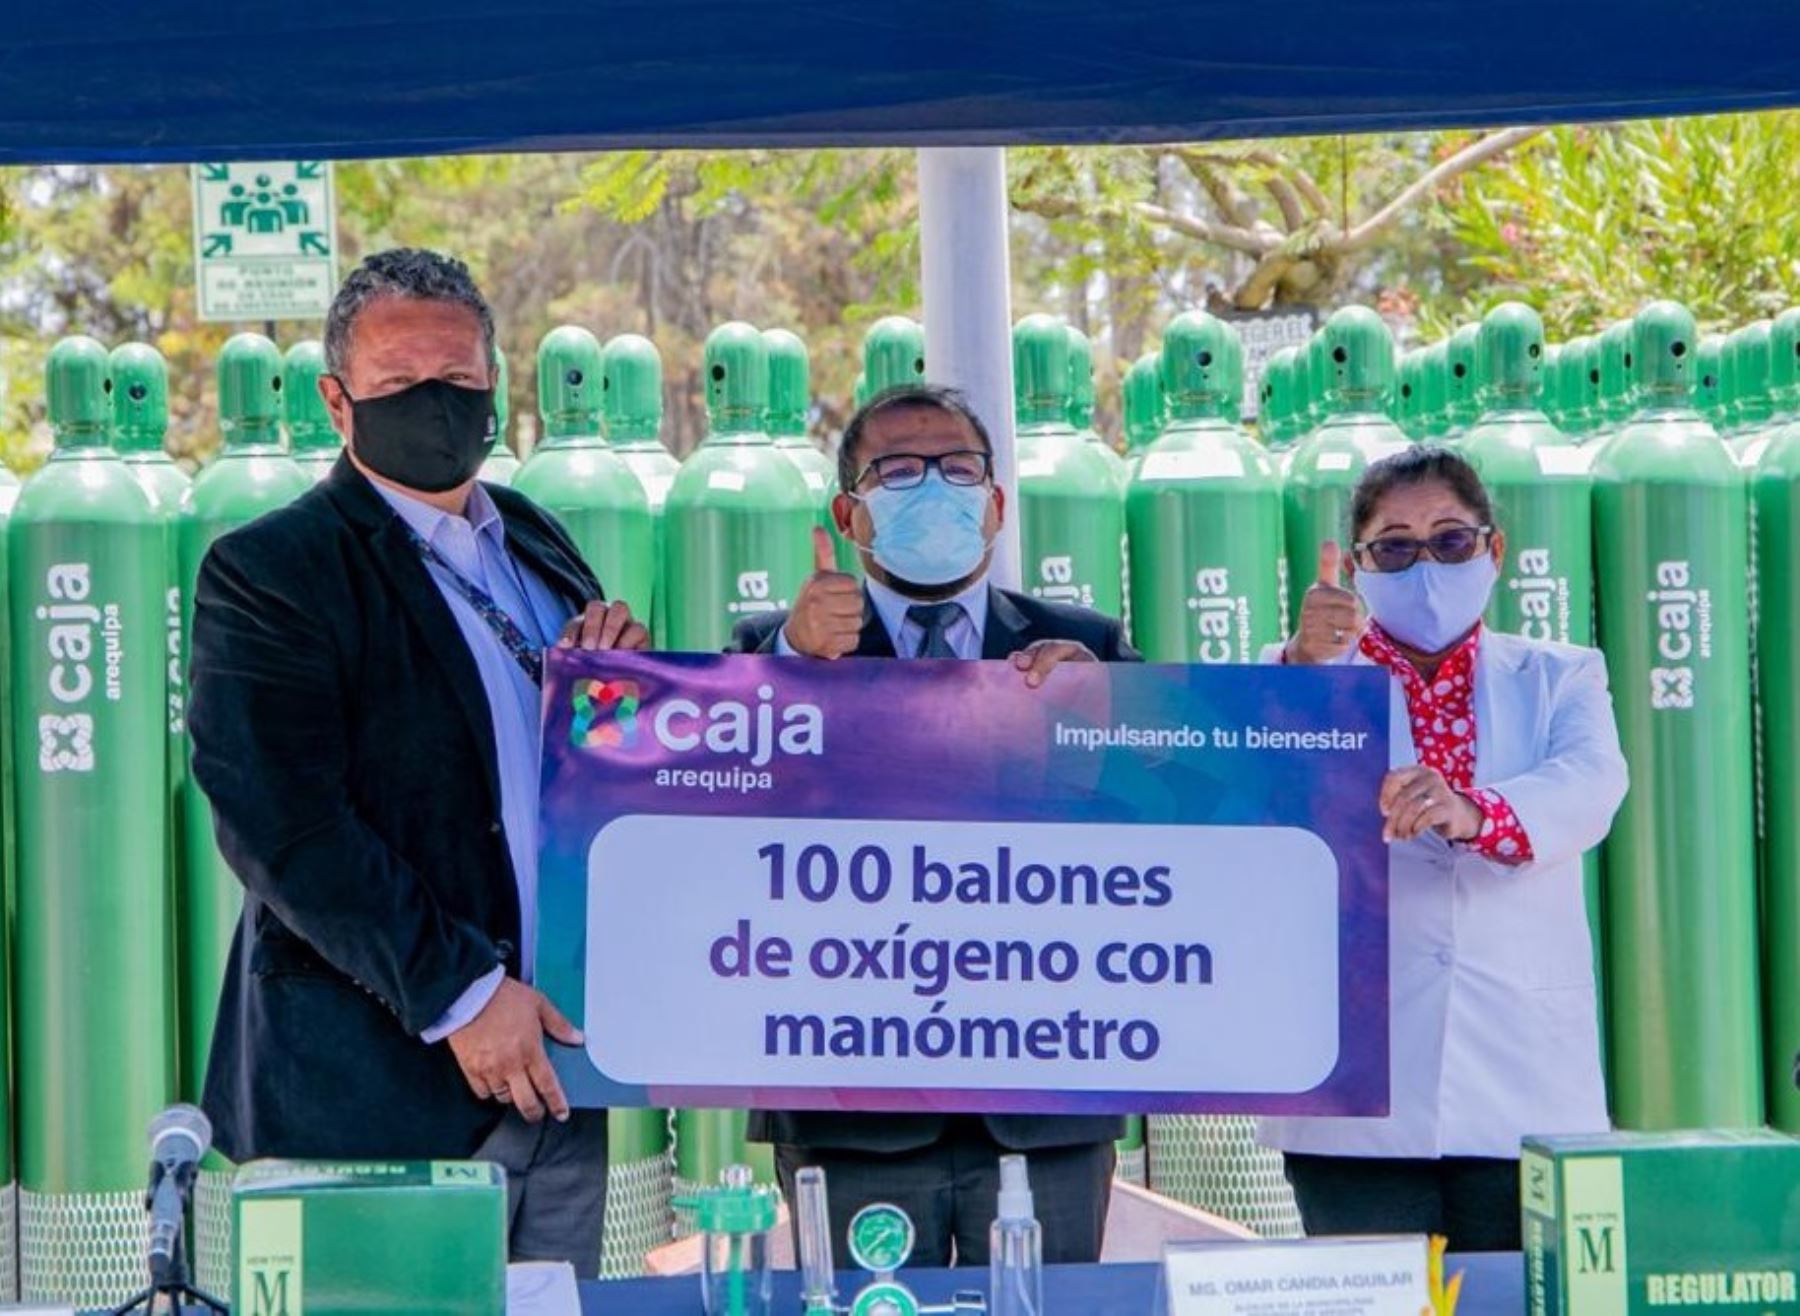 La Caja Arequipa donó 140 balones de oxígeno a dos hospitales de la Ciudad Blanca para la atención de pacientes con coronavirus covid-19. Foto: ANDINA/difusión.